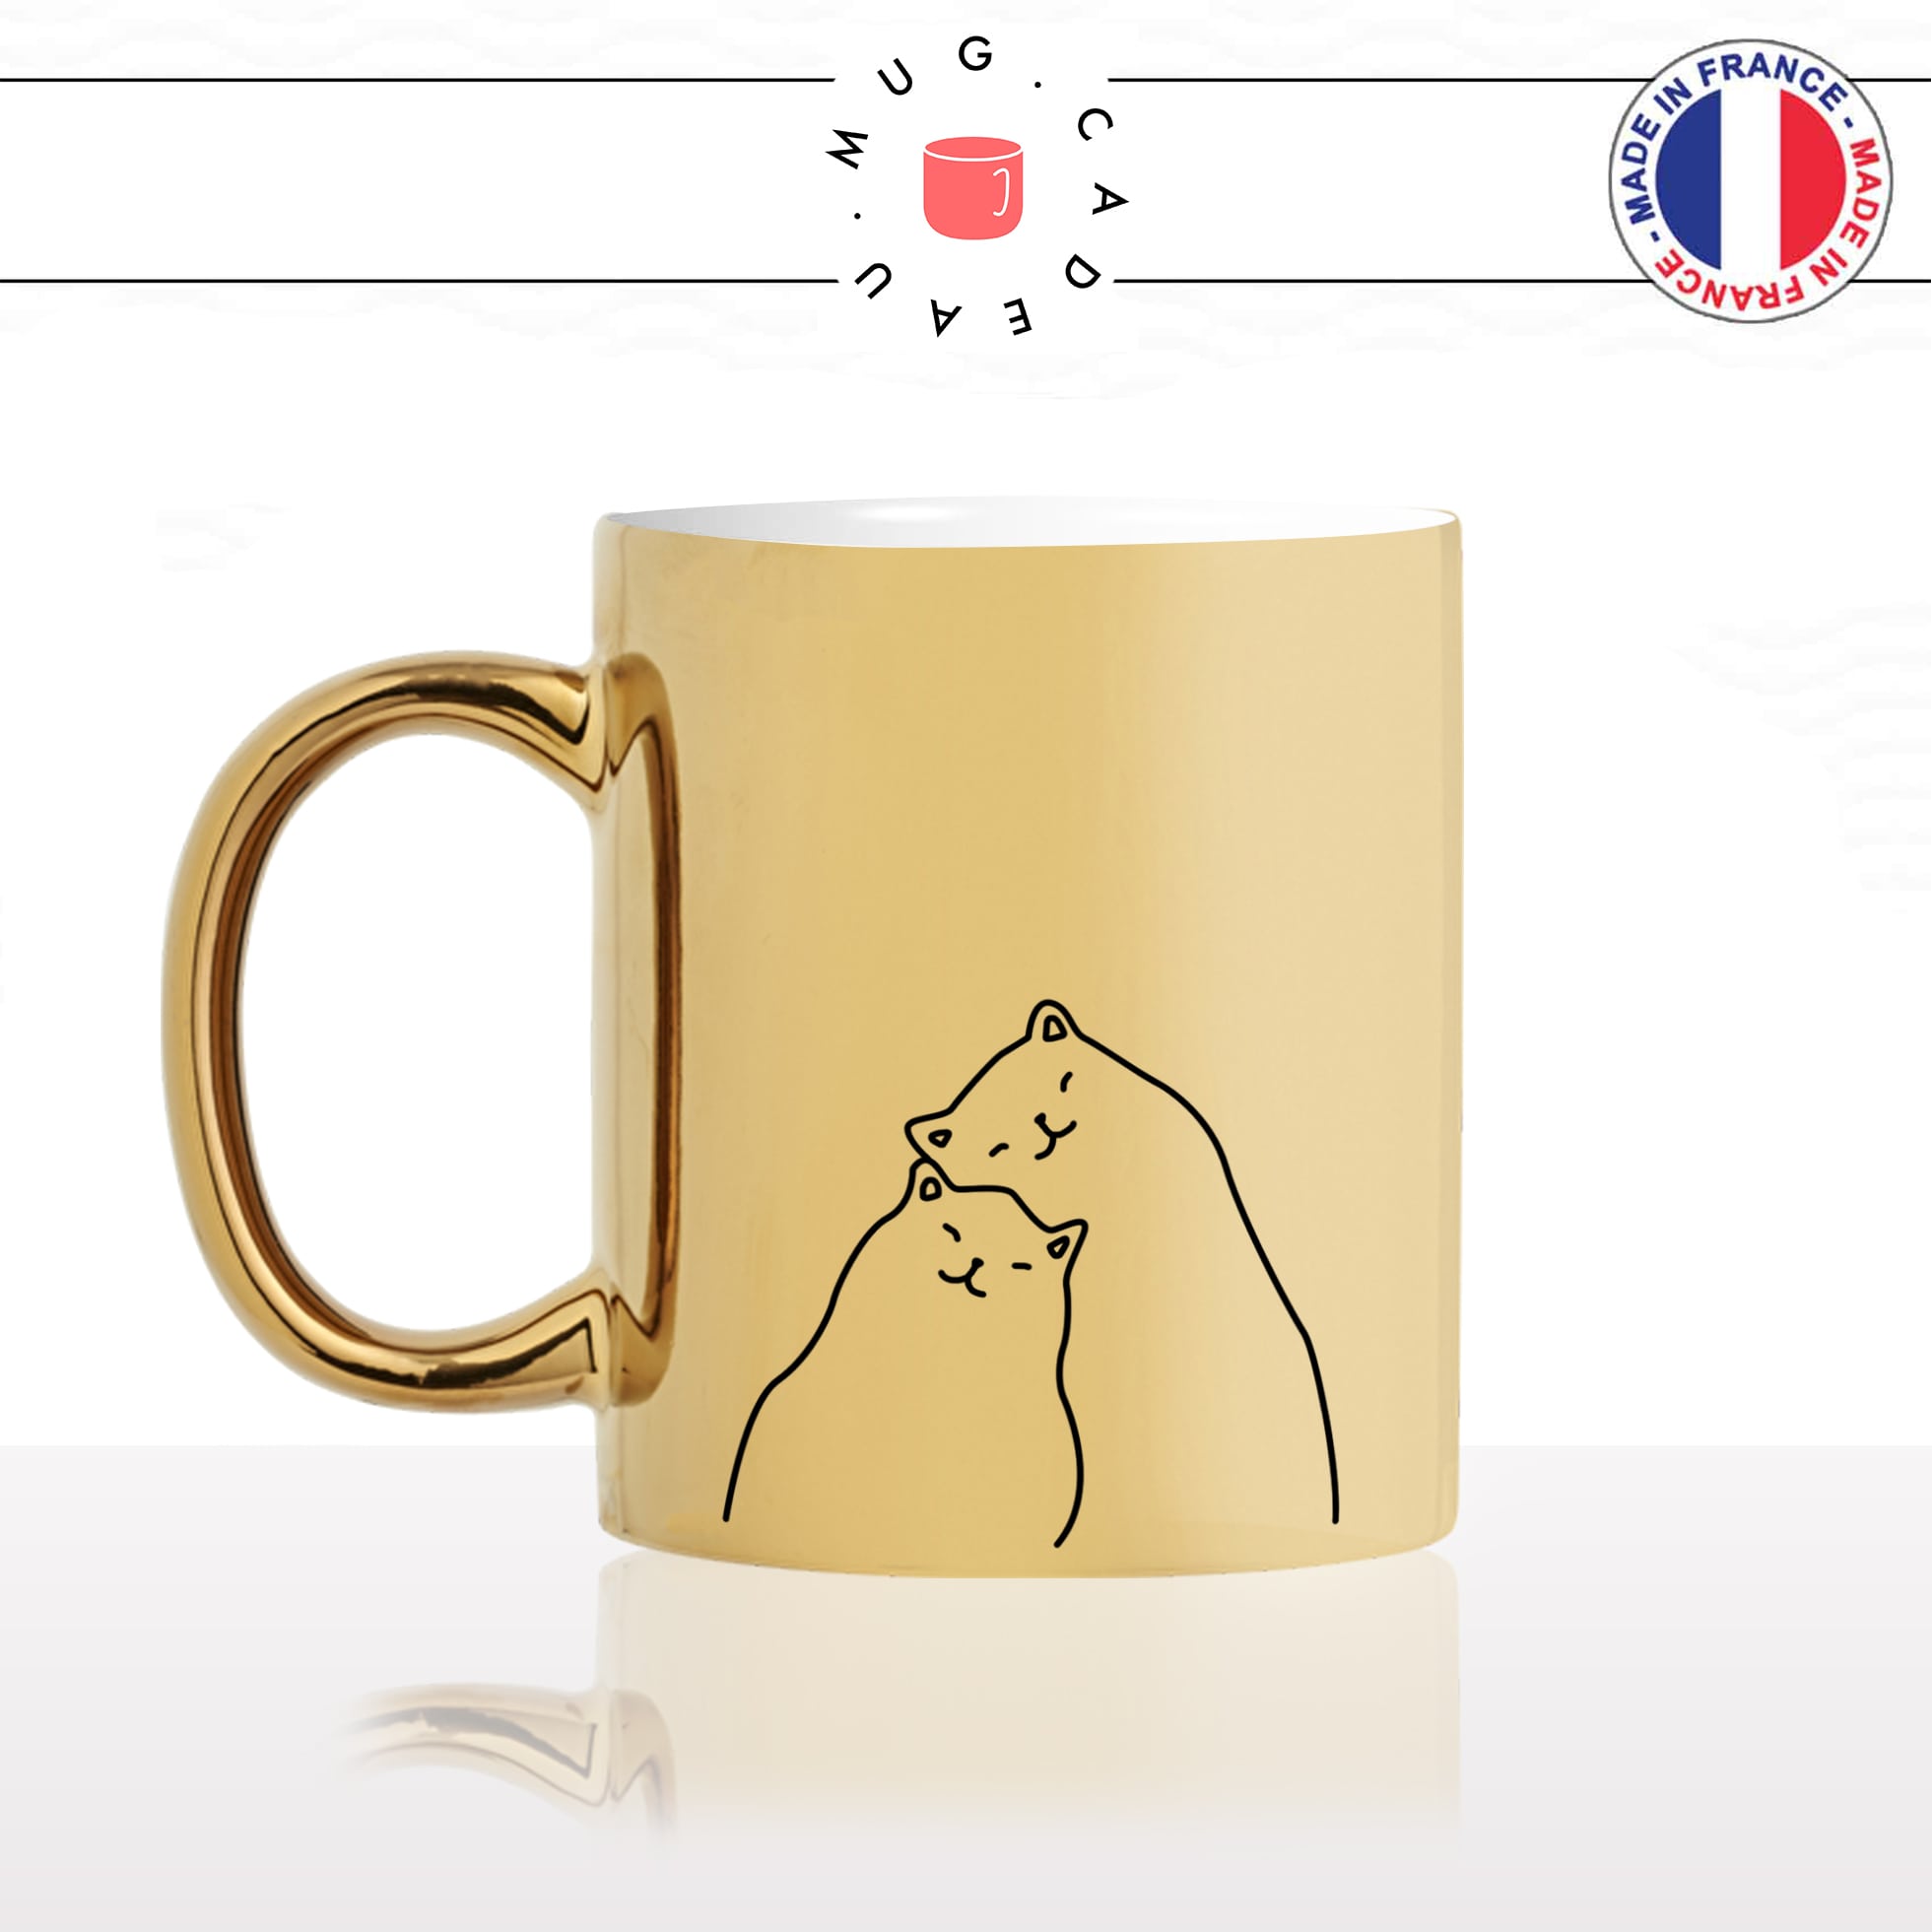 mug-tasse-or-doré-amoureux-couple-amour-chats-mignon-animal-chaton-dessin-noir-fun-café-thé-idée-cadeau-original-personnalisé-gold-min